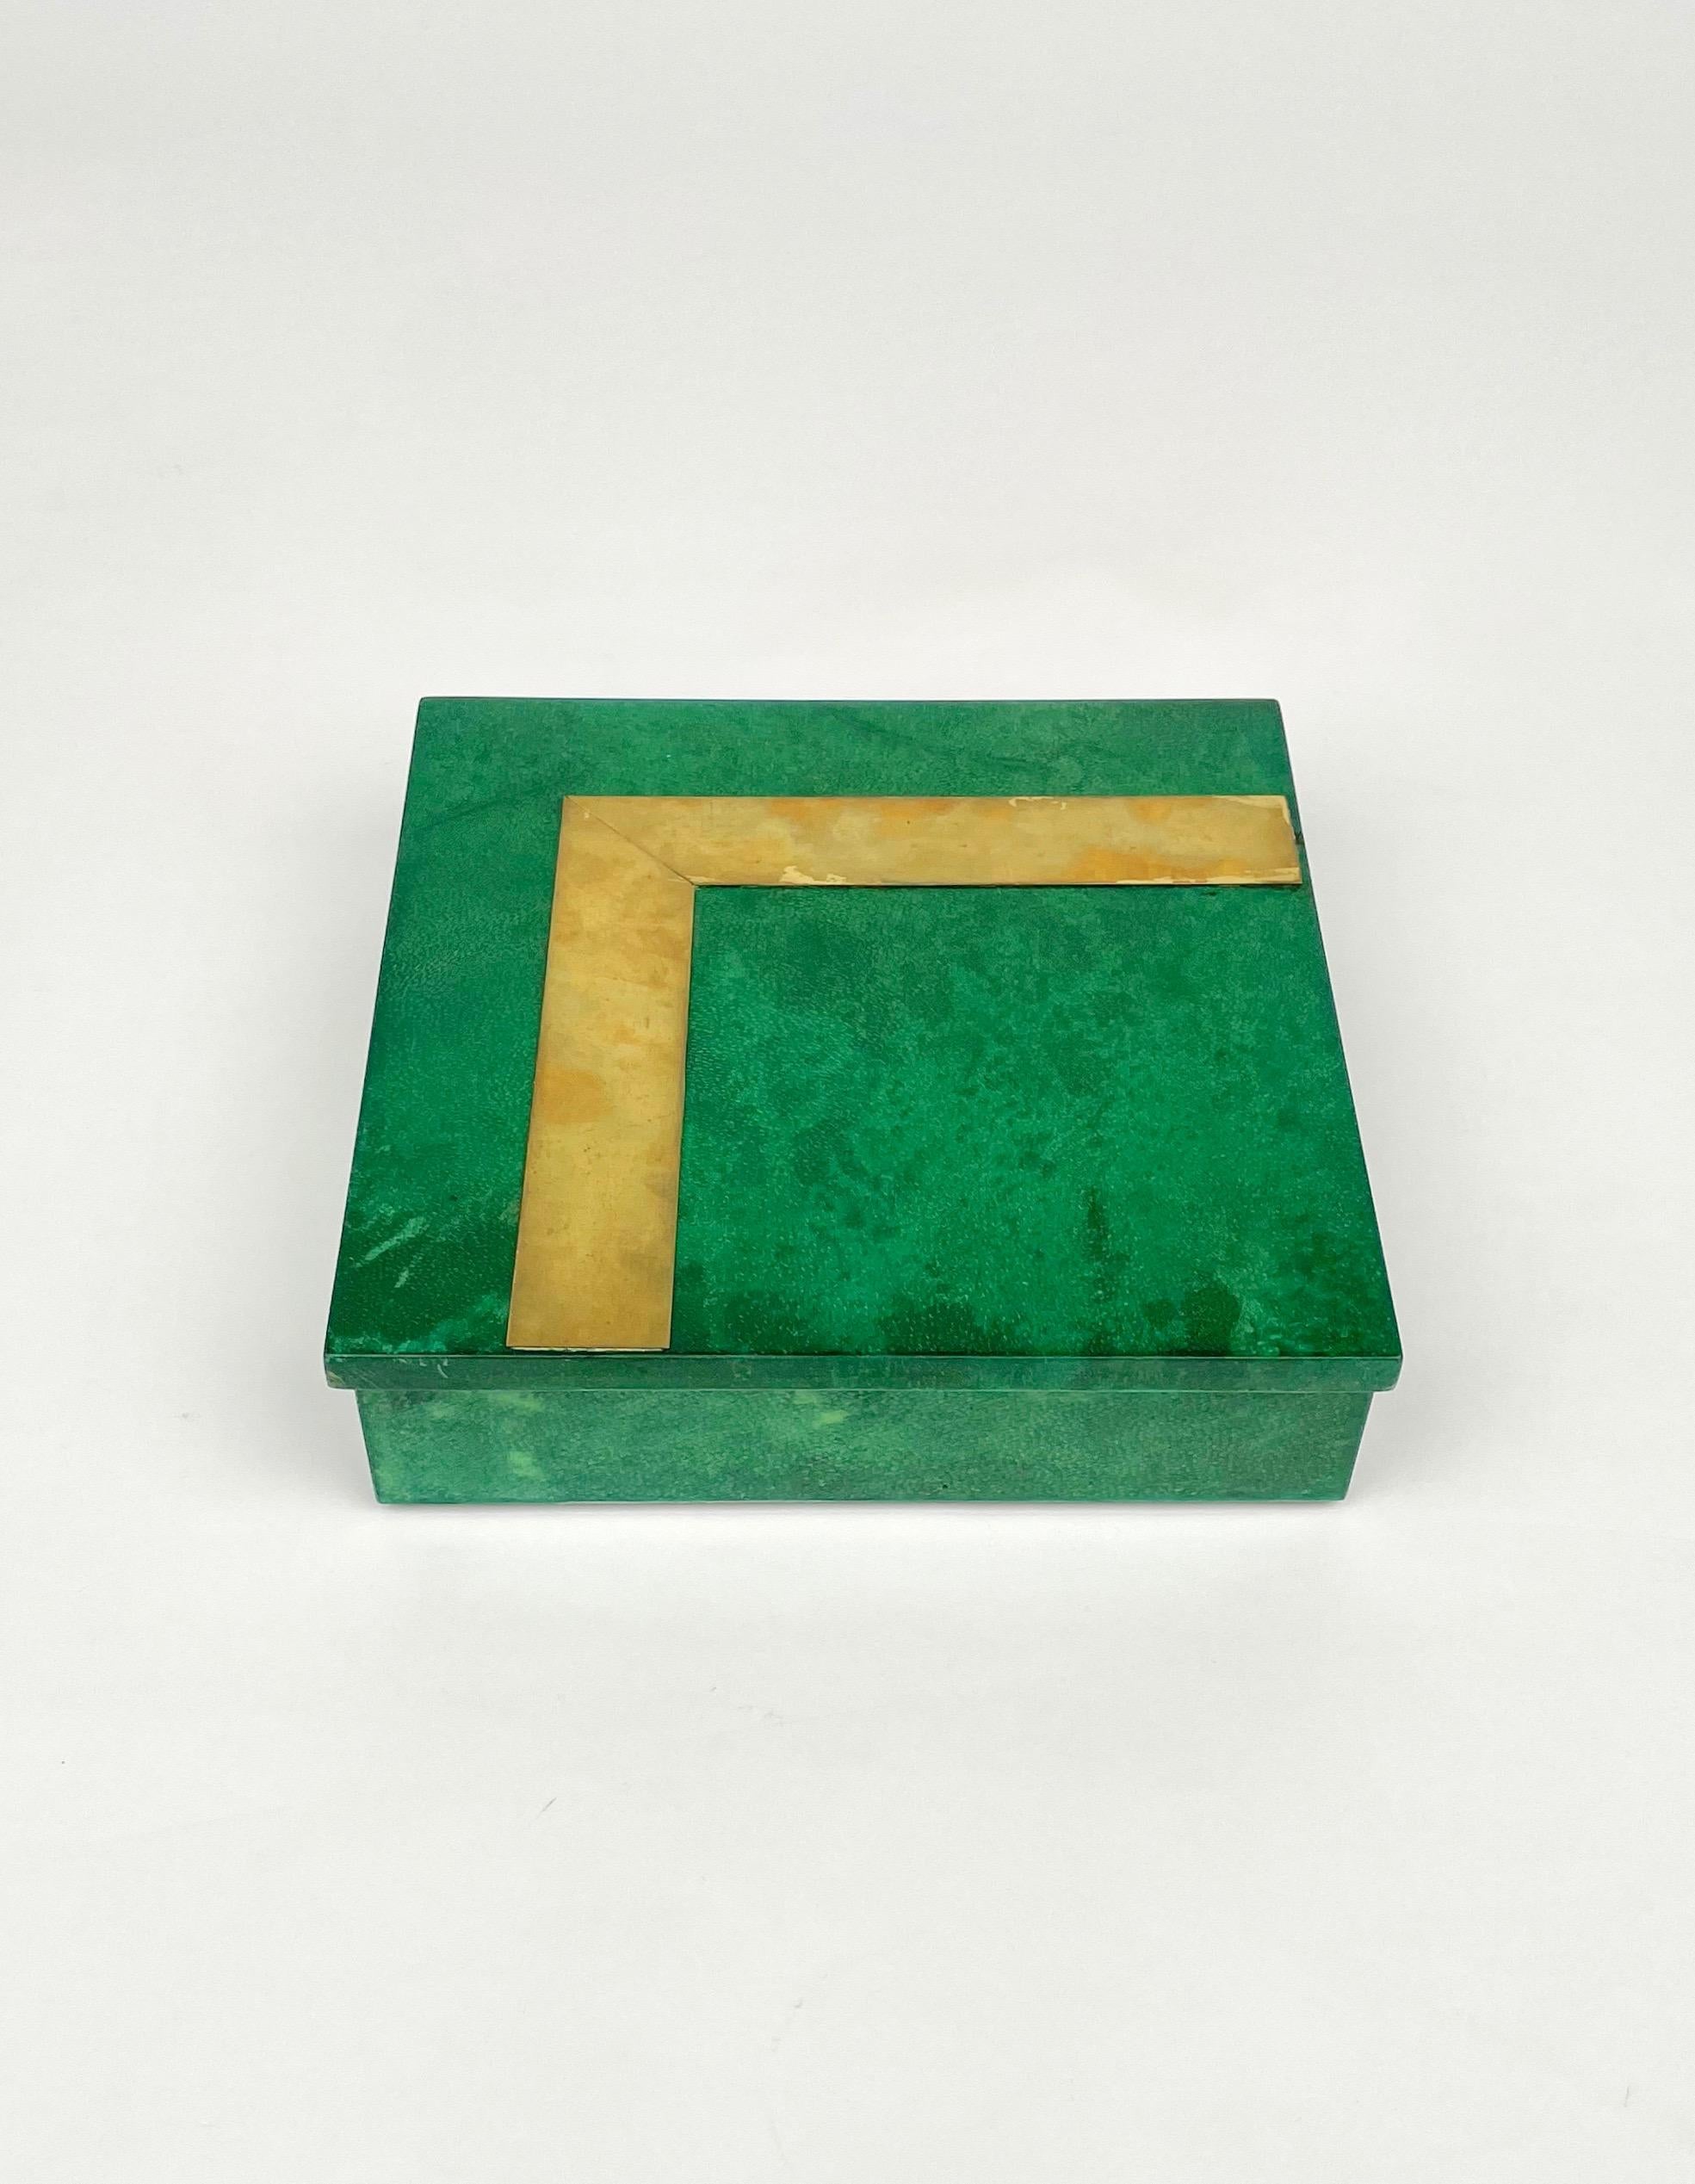 Quadratische Schachtel aus grünem Ziegenleder mit Messingdetails, die dem italienischen Designer Aldo Tura zugeschrieben wird.

Hergestellt in Italien in den 1960er Jahren.